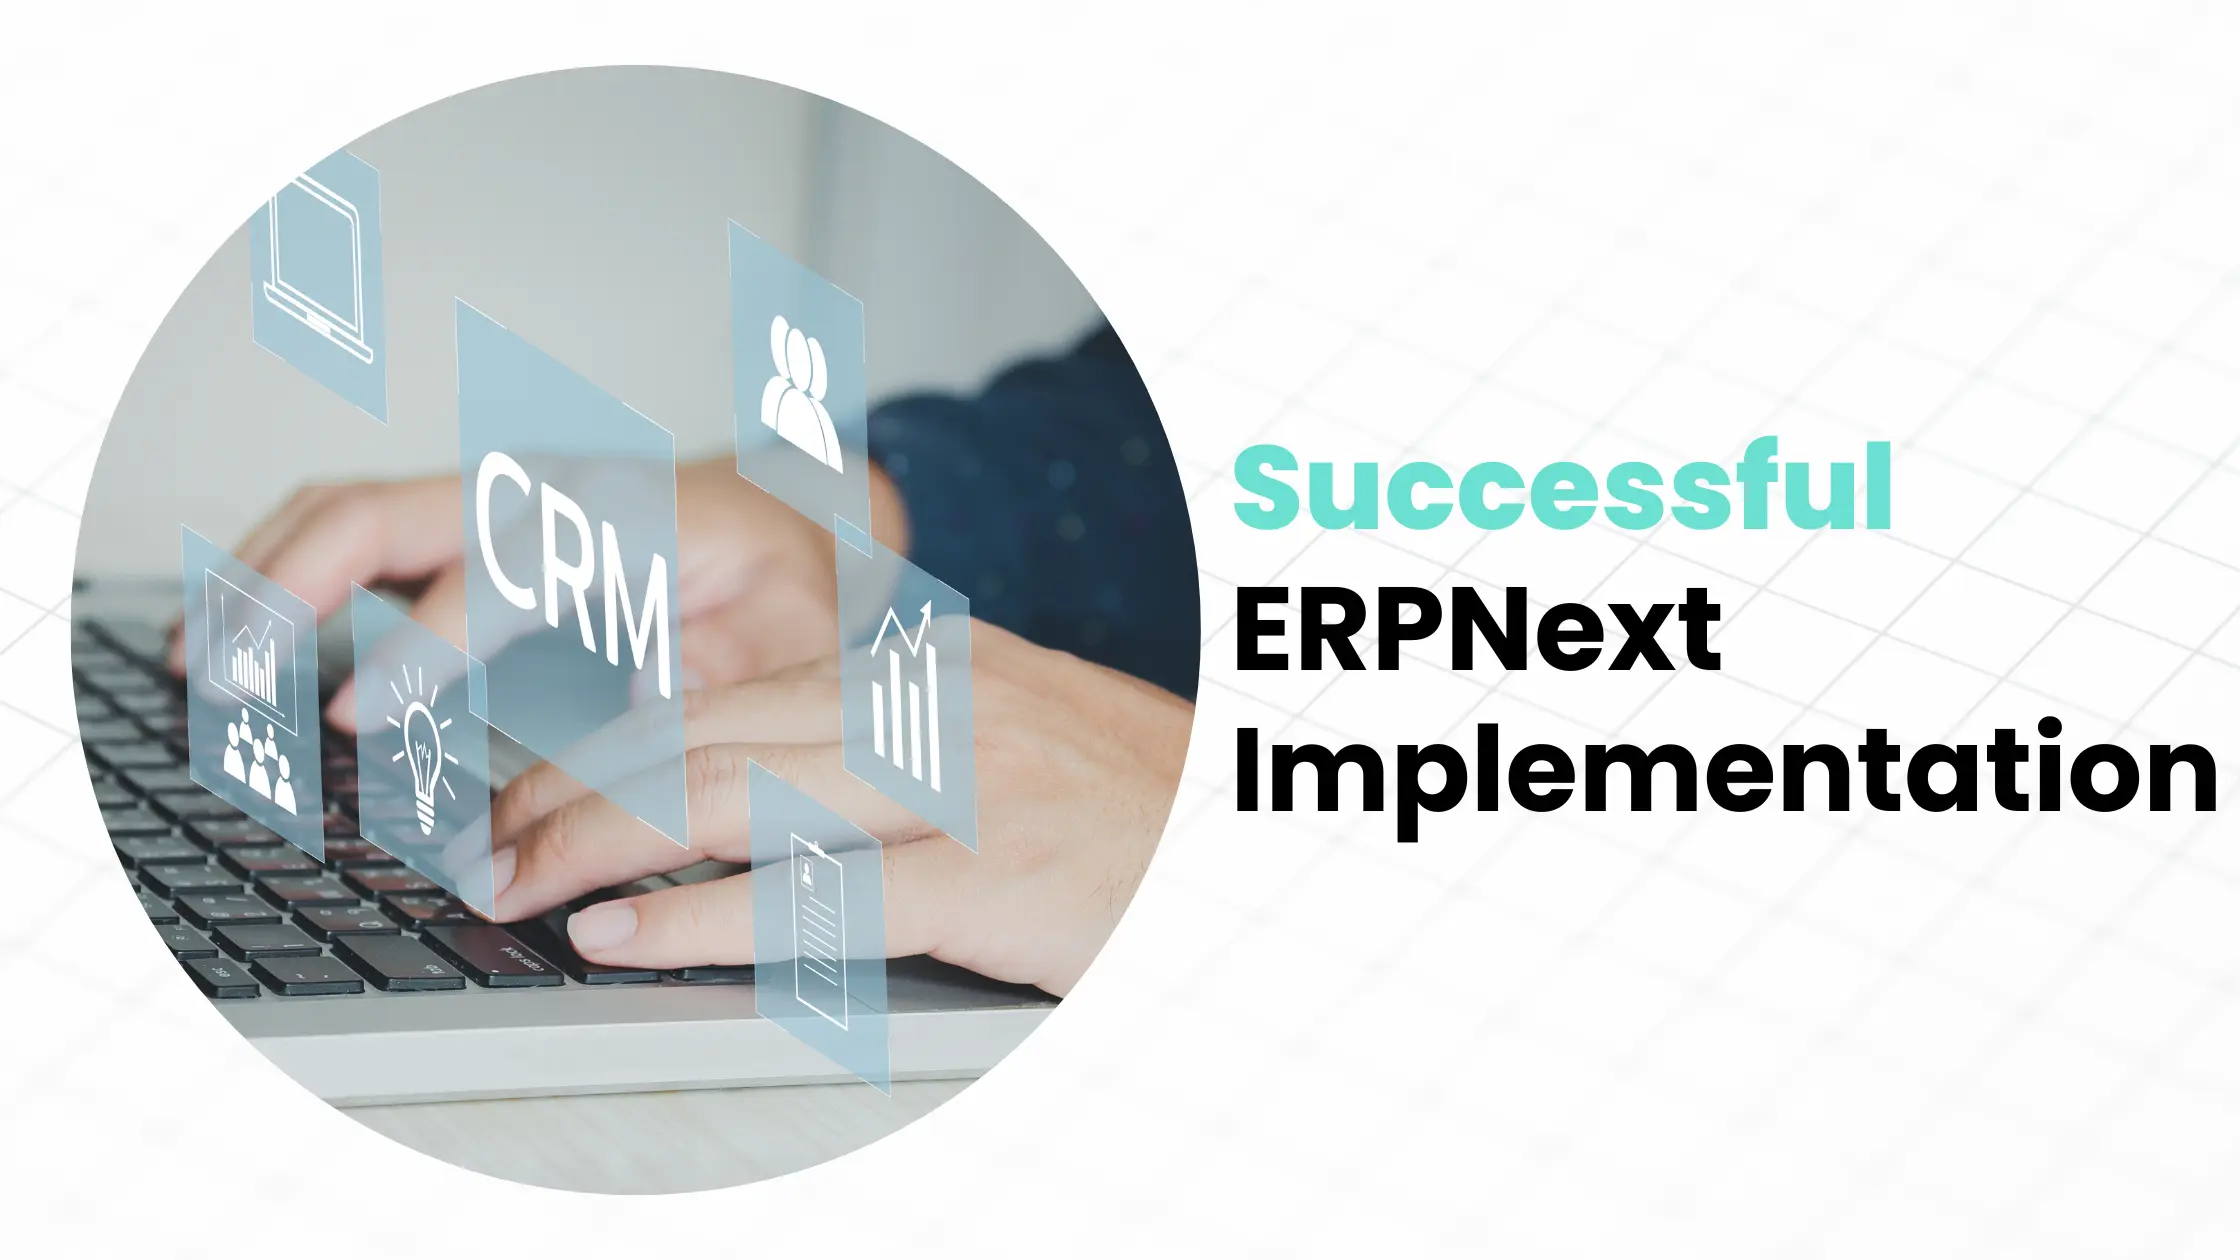 Key Factors for Successful ERPNext Implementation